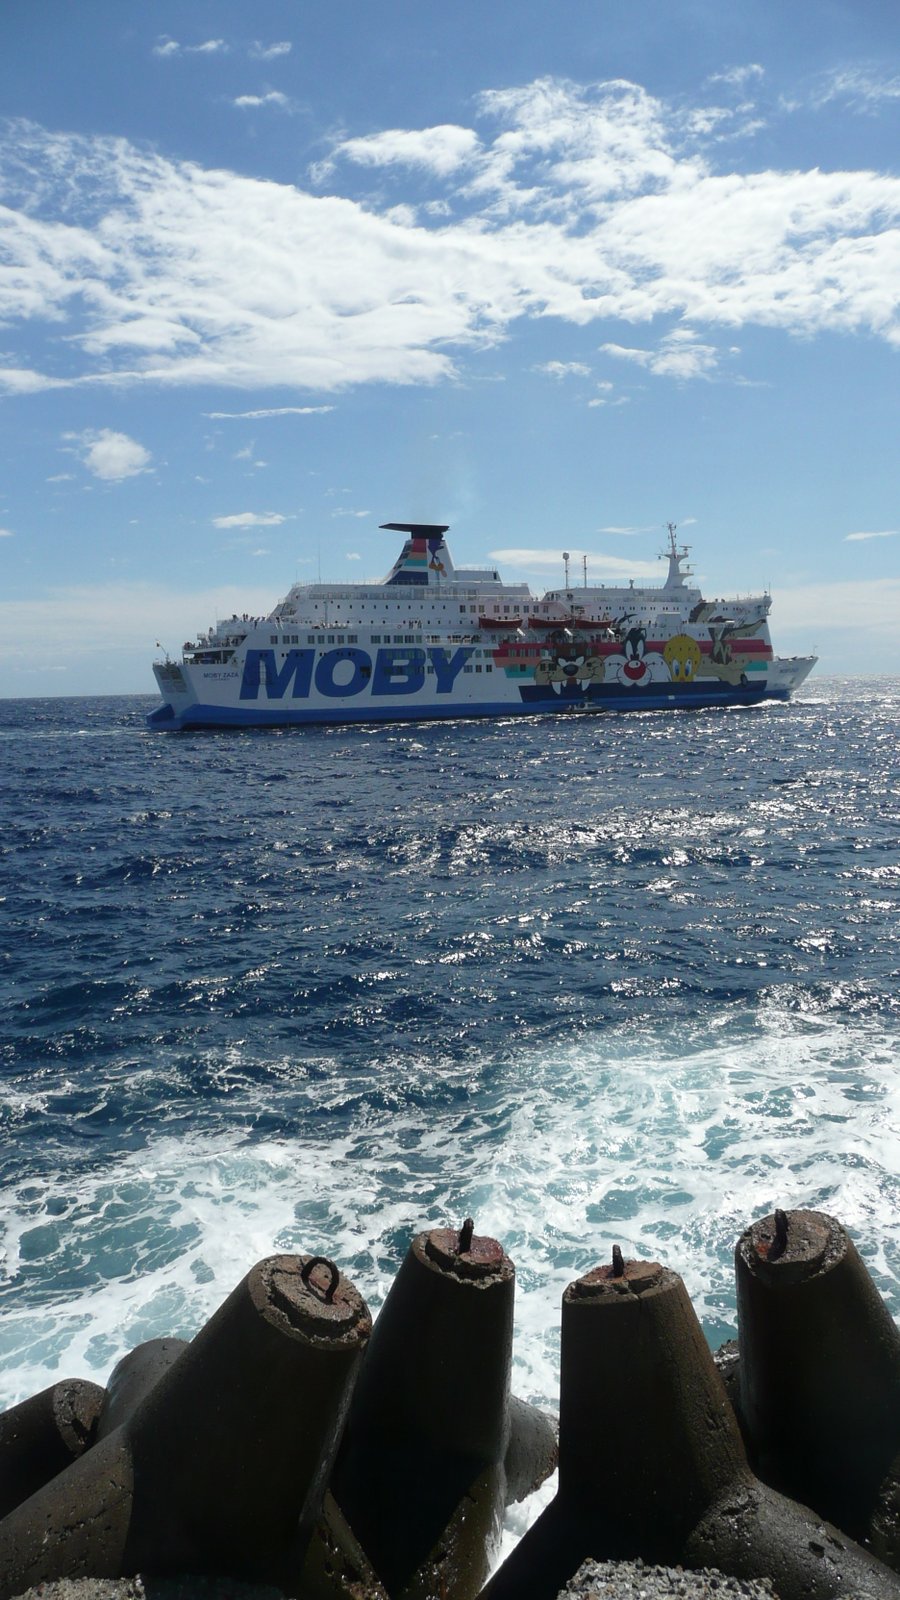 Le départ du Moby Zazà vu depuis le vieux port de Bastia, en juillet 2016 ; photo : Romain Roussel